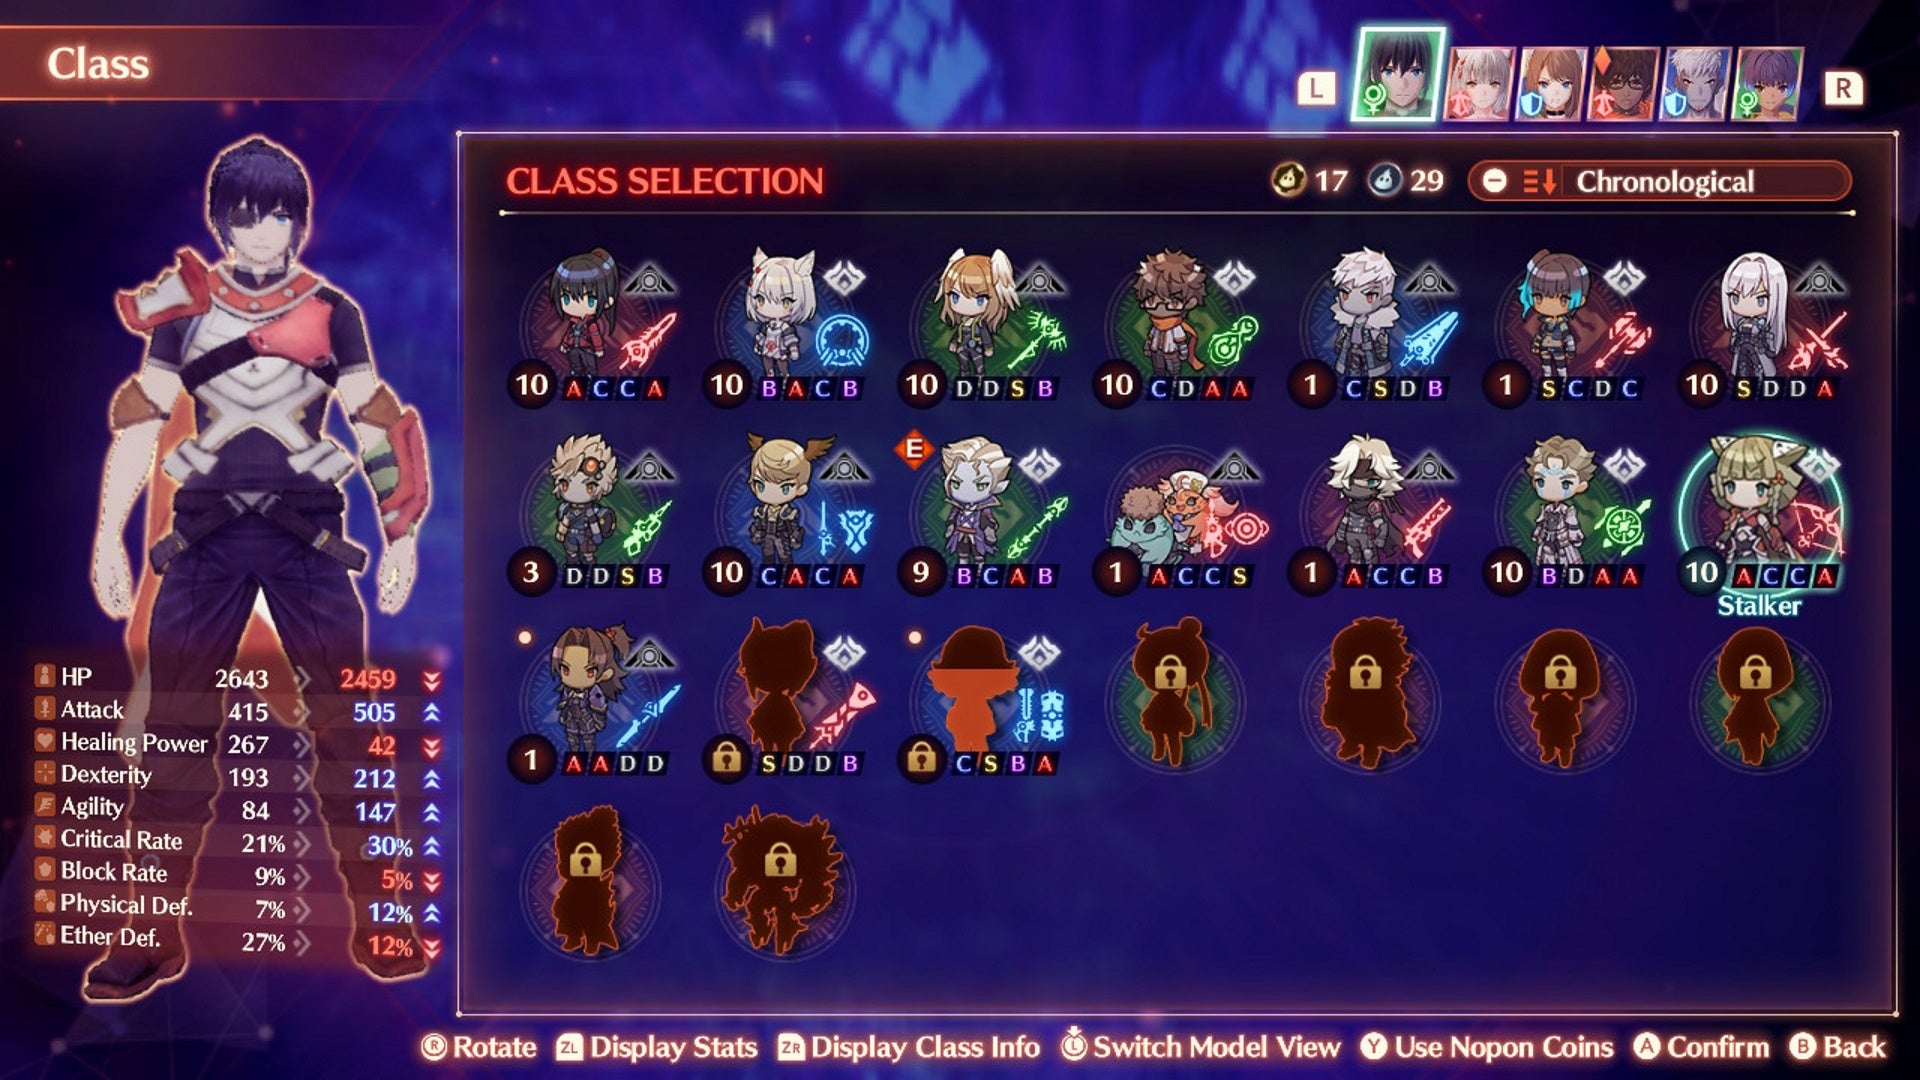 Xenoblade 3 arts: The Stalker class selection screen